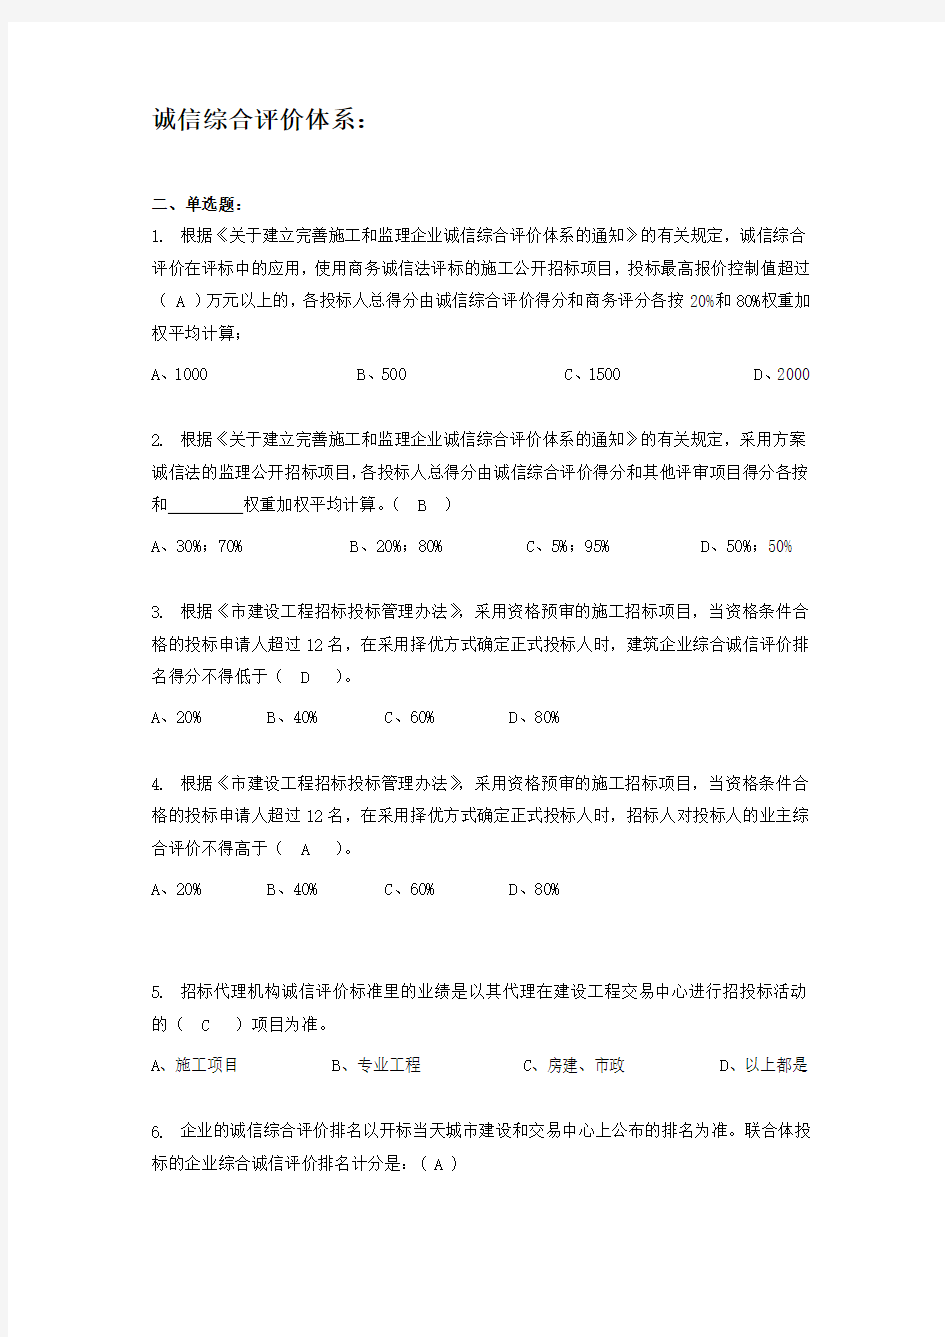 广州市诚信综合评价与衡量体系